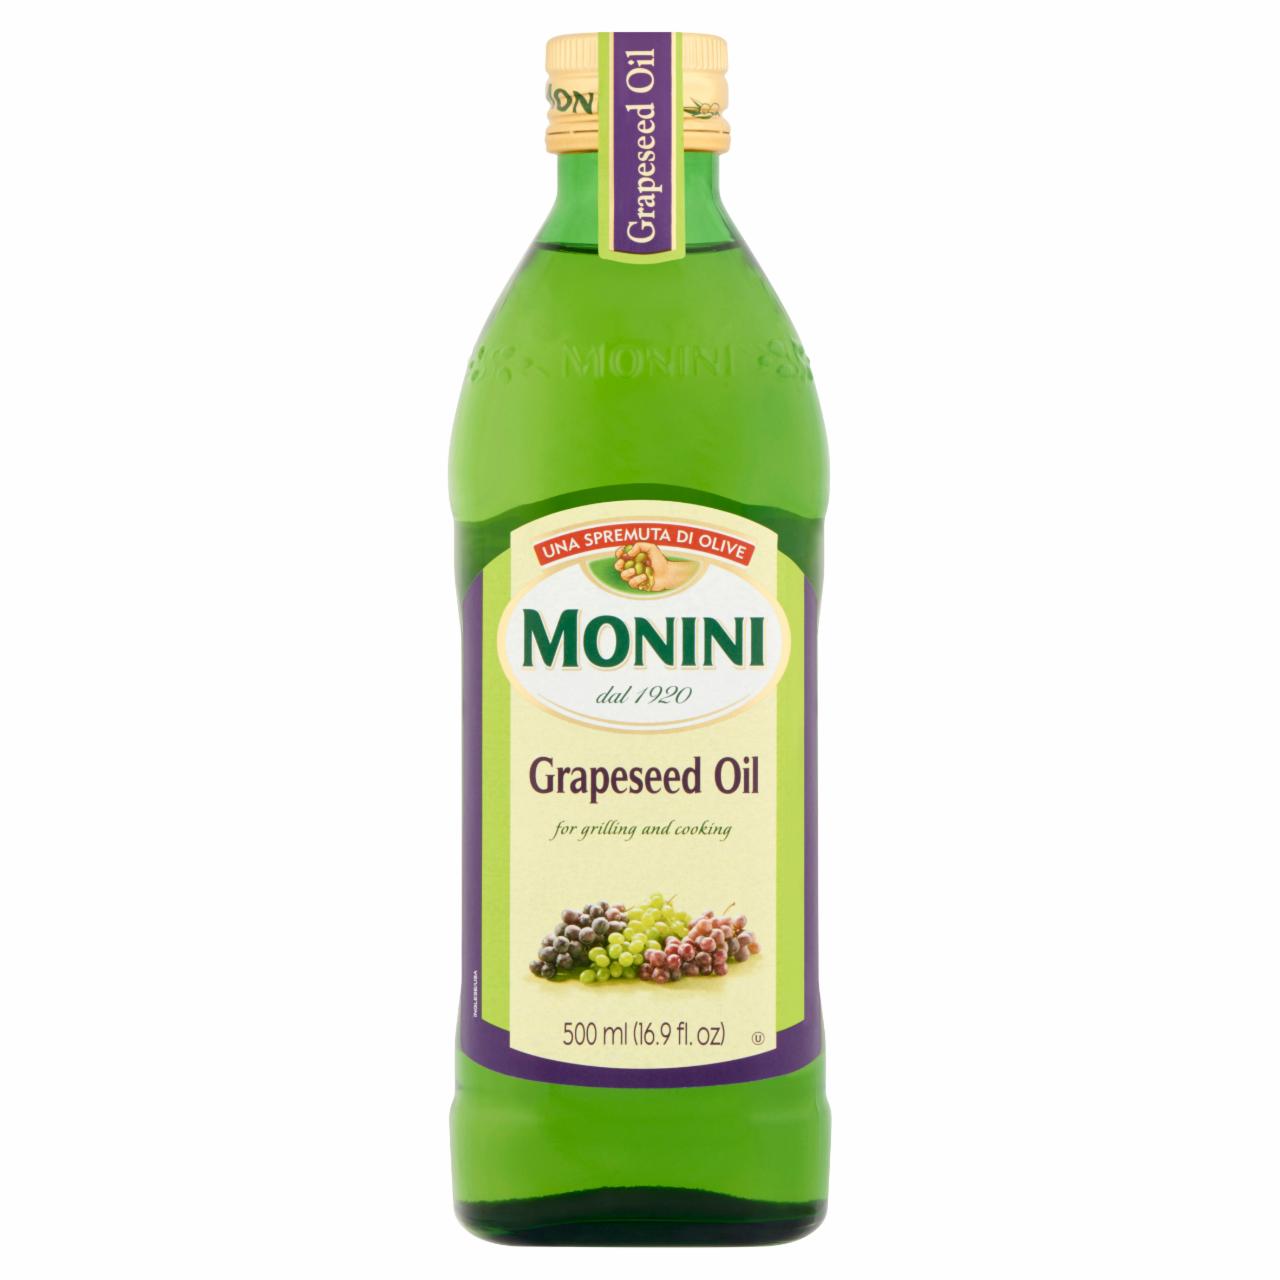 Képek - Monini szőlőmagolaj 500 ml